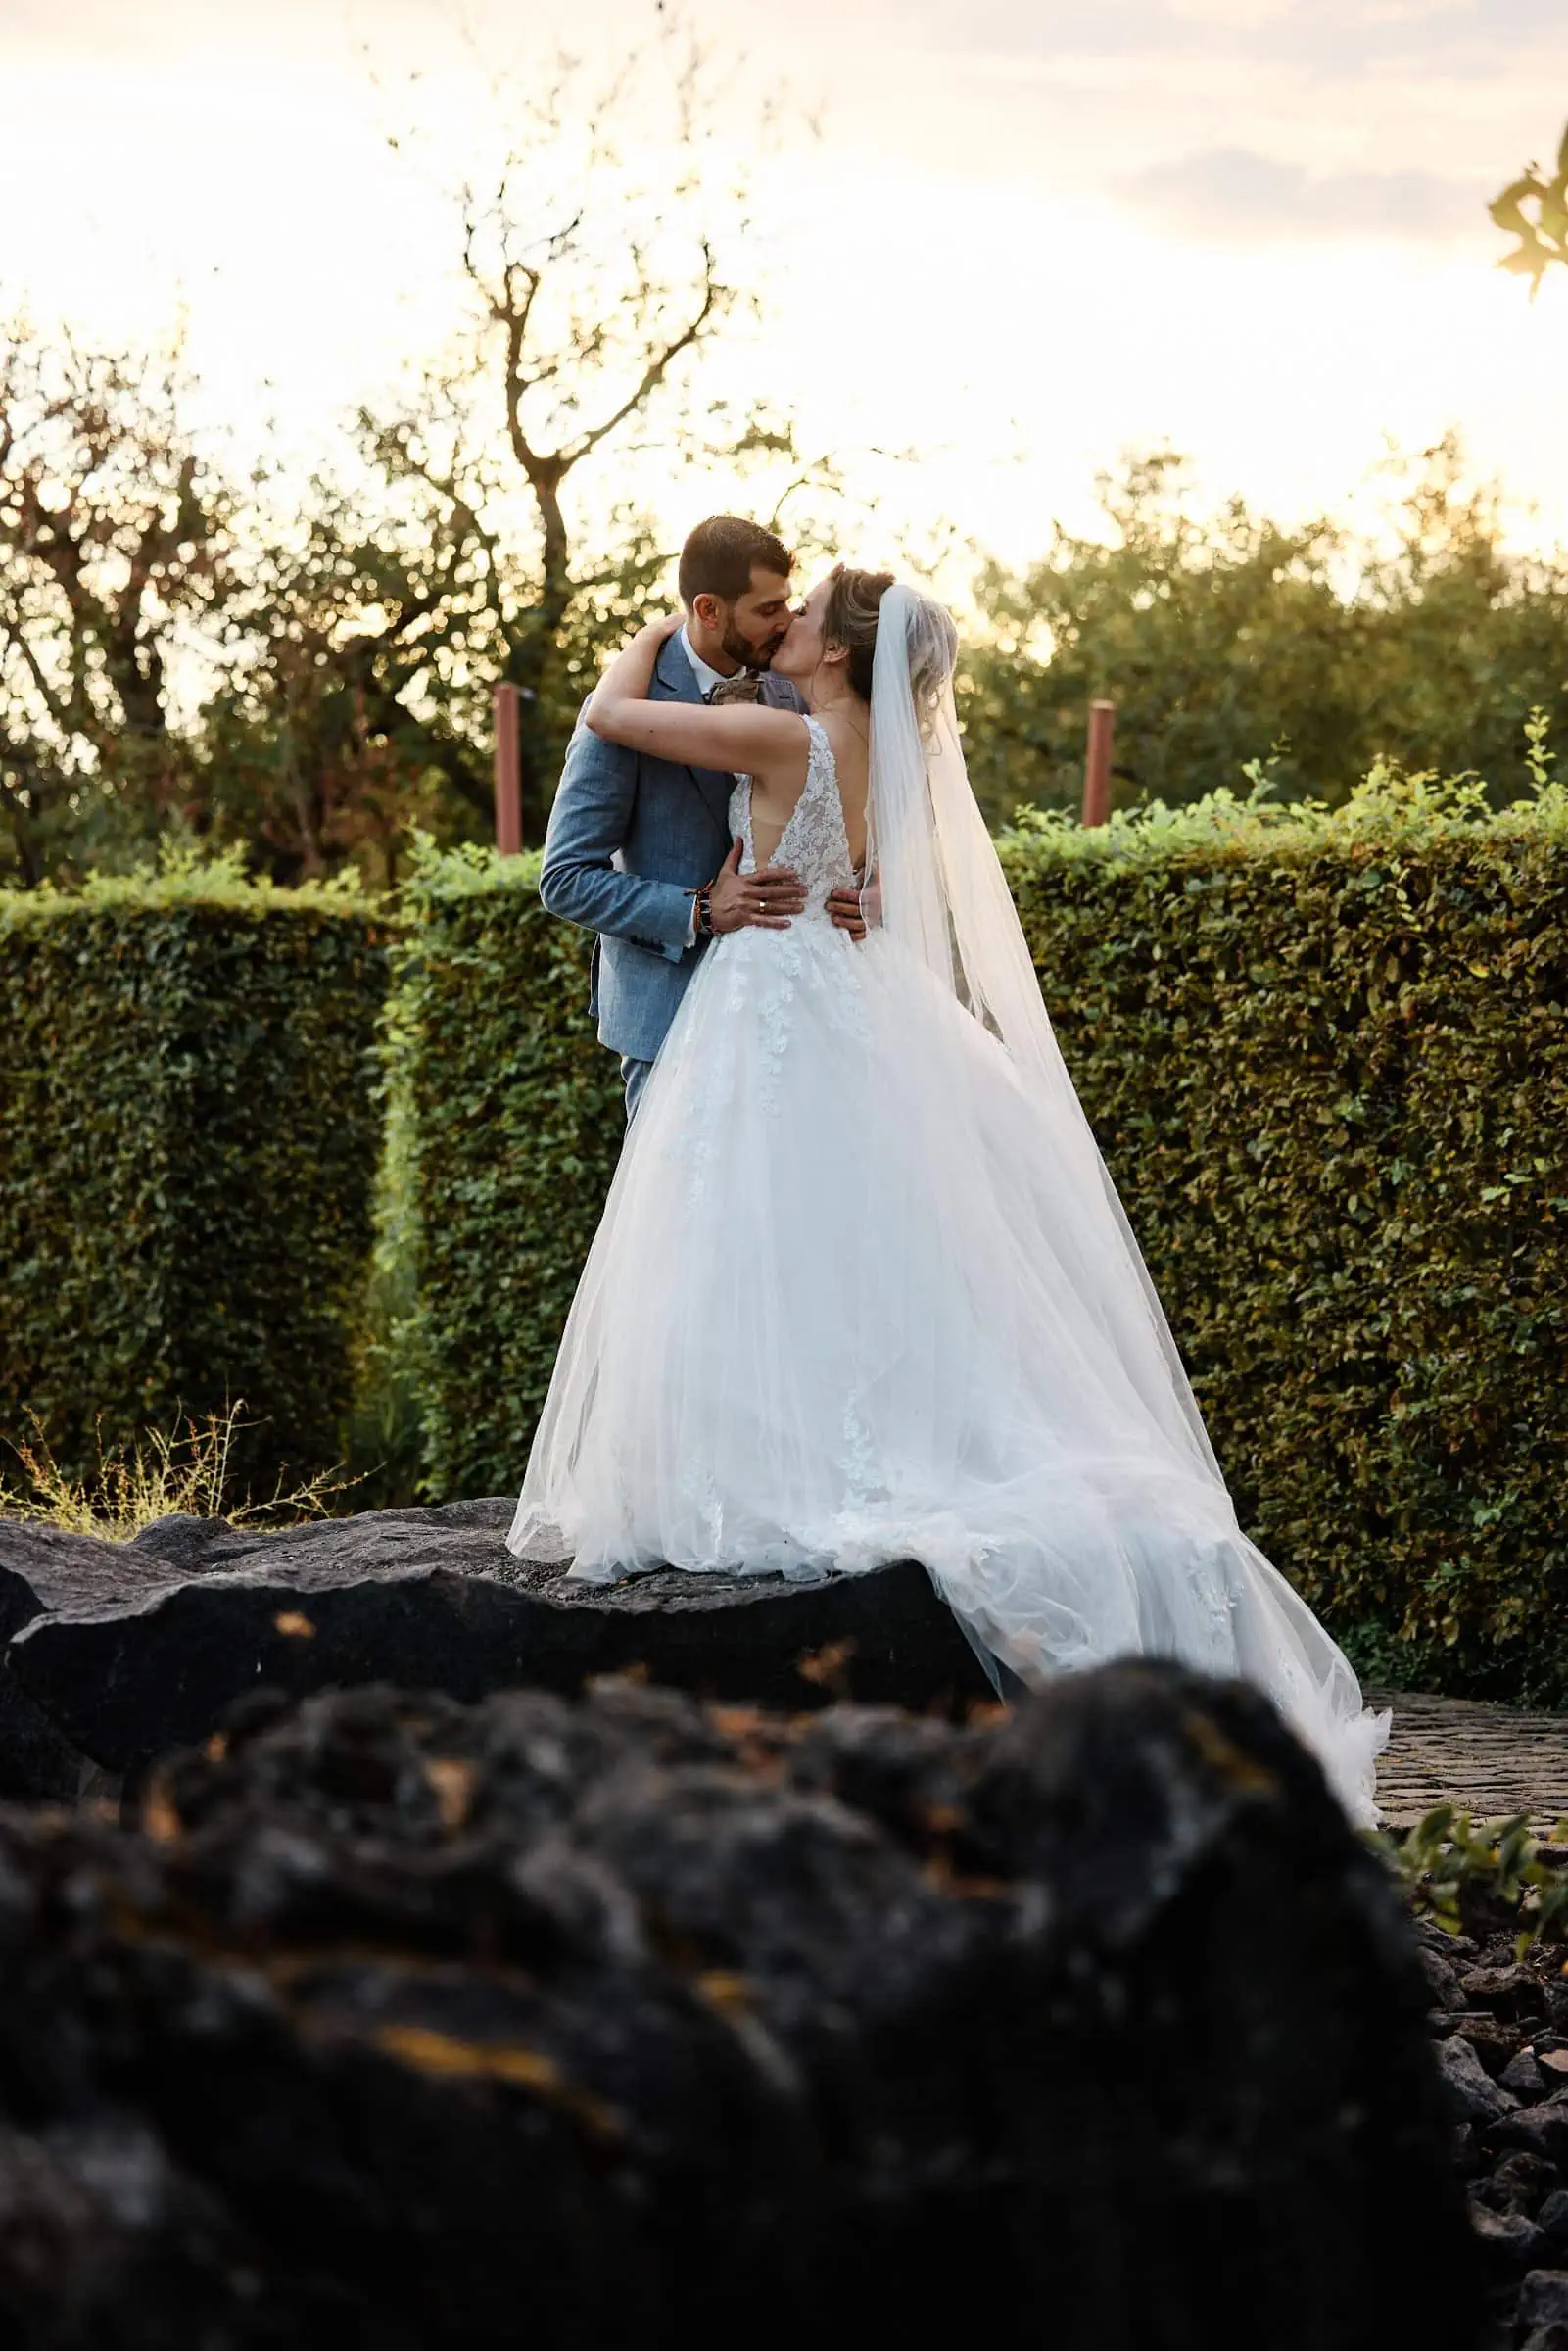 Brautpaar beim Fotoshooting in den Gärten vor dem Fernsehturm am Petrisberg Trier